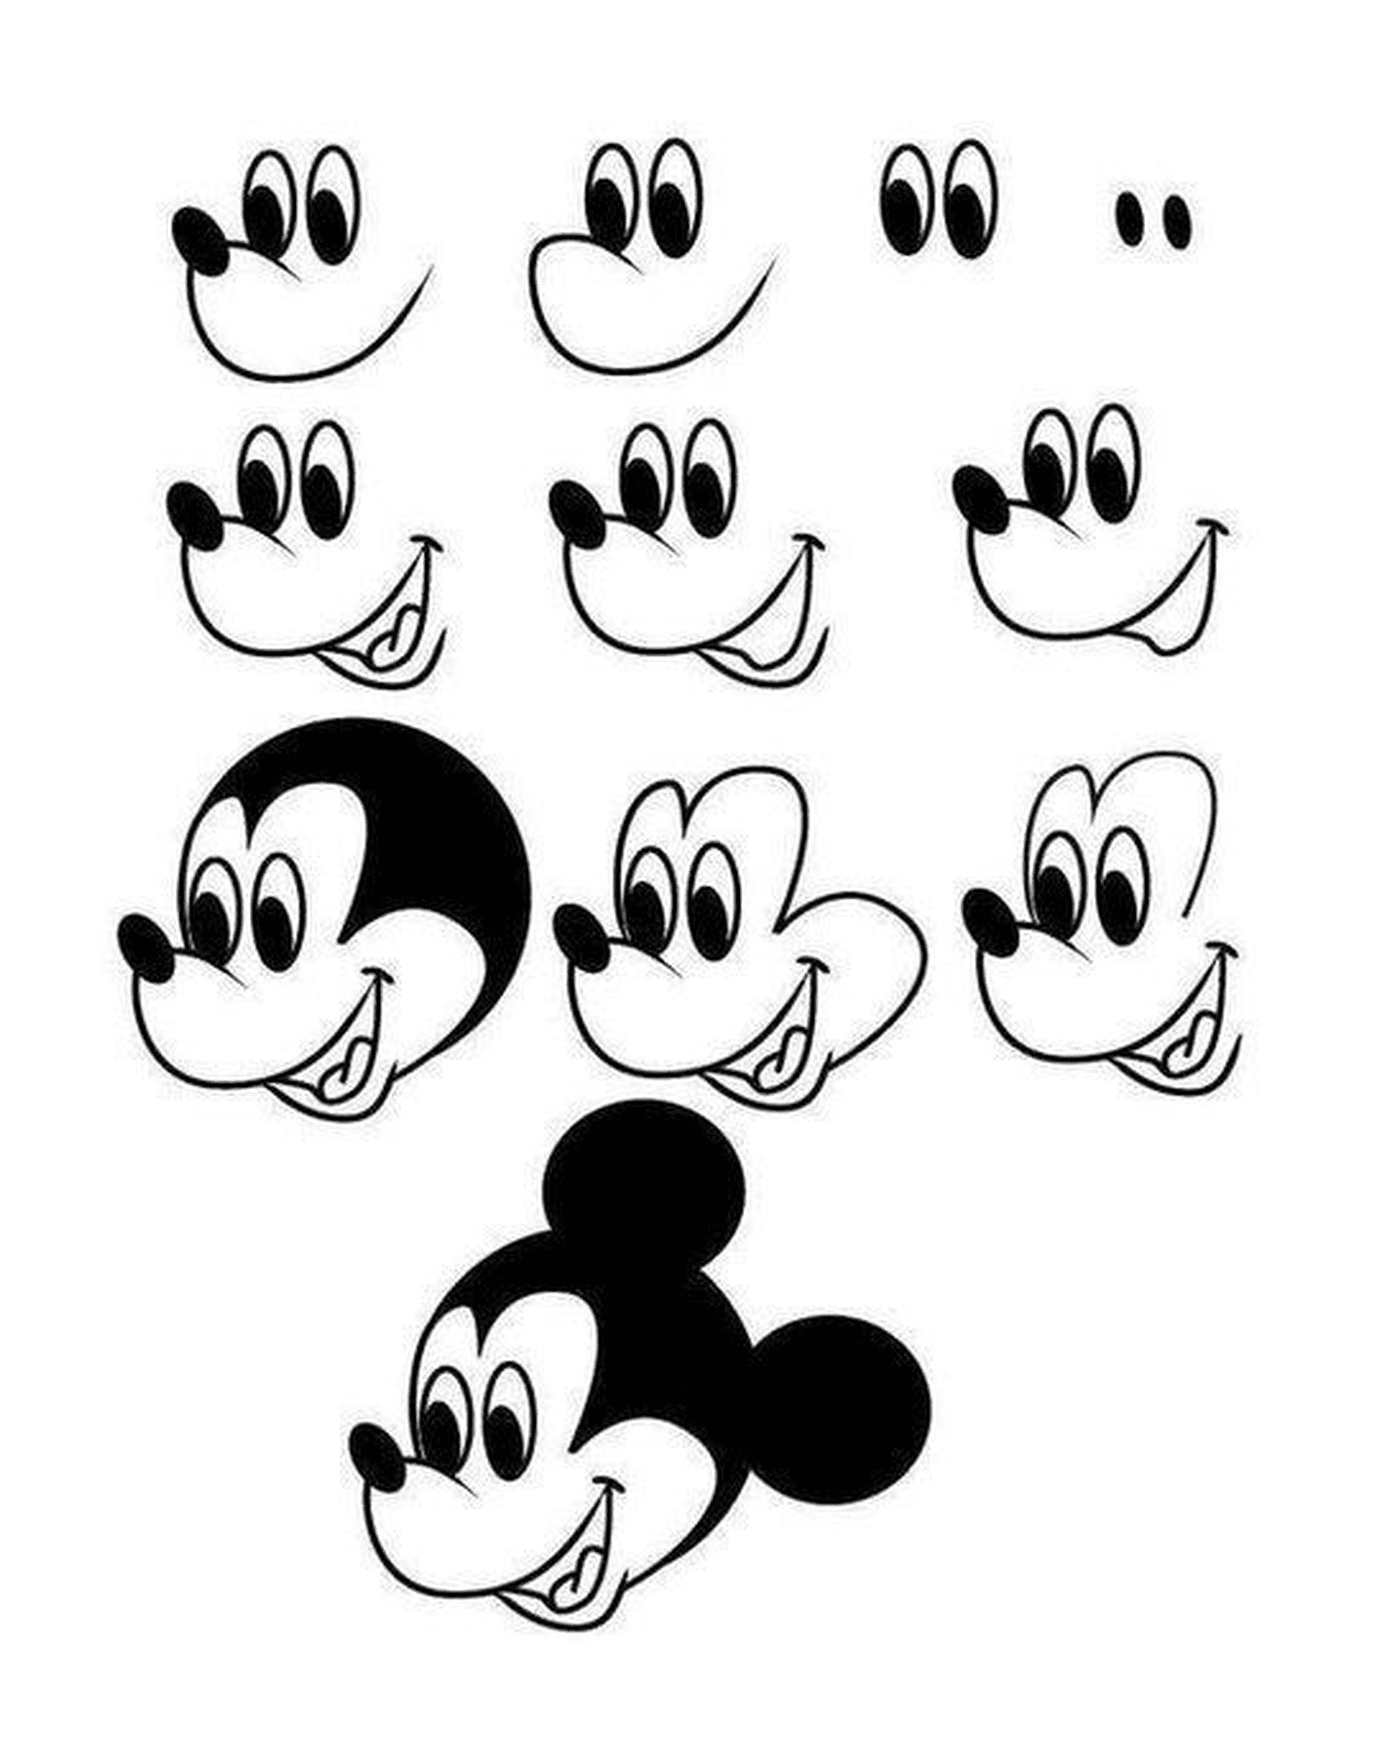   Dessin de Mickey Mouse avec différentes formes 